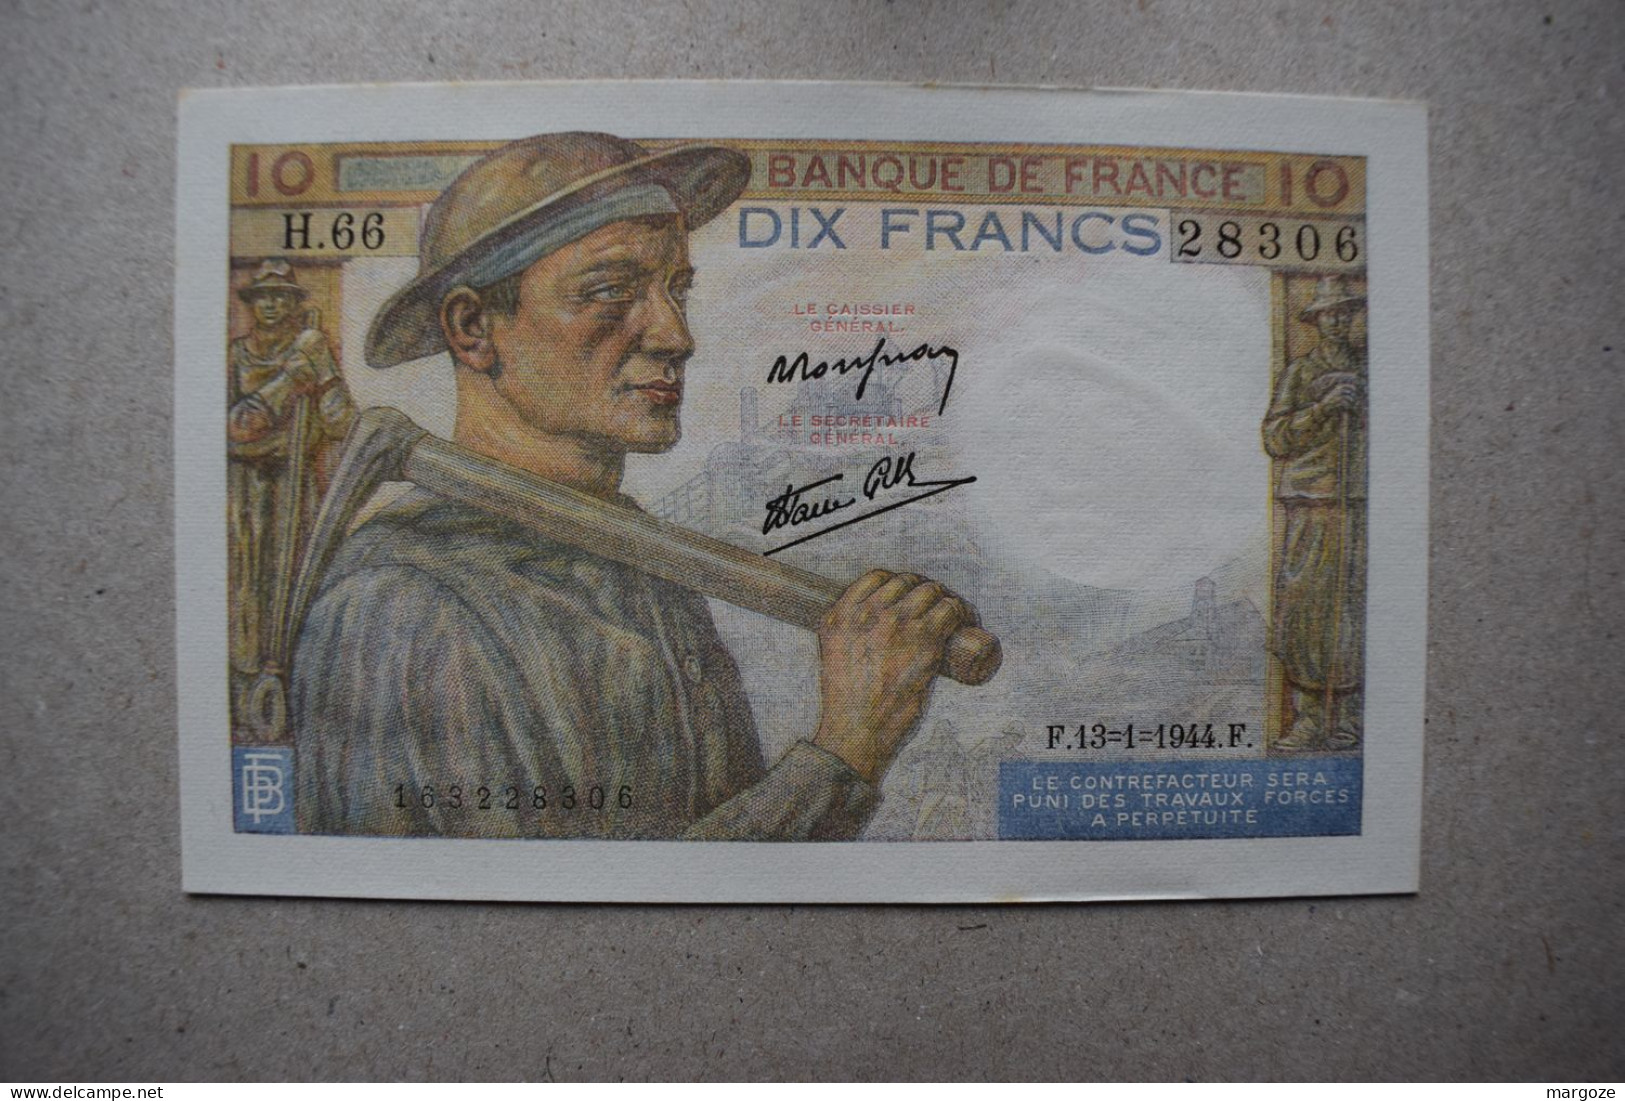 Lot de 5 billets France de 10 francs 1944 P99e aUNC UNC